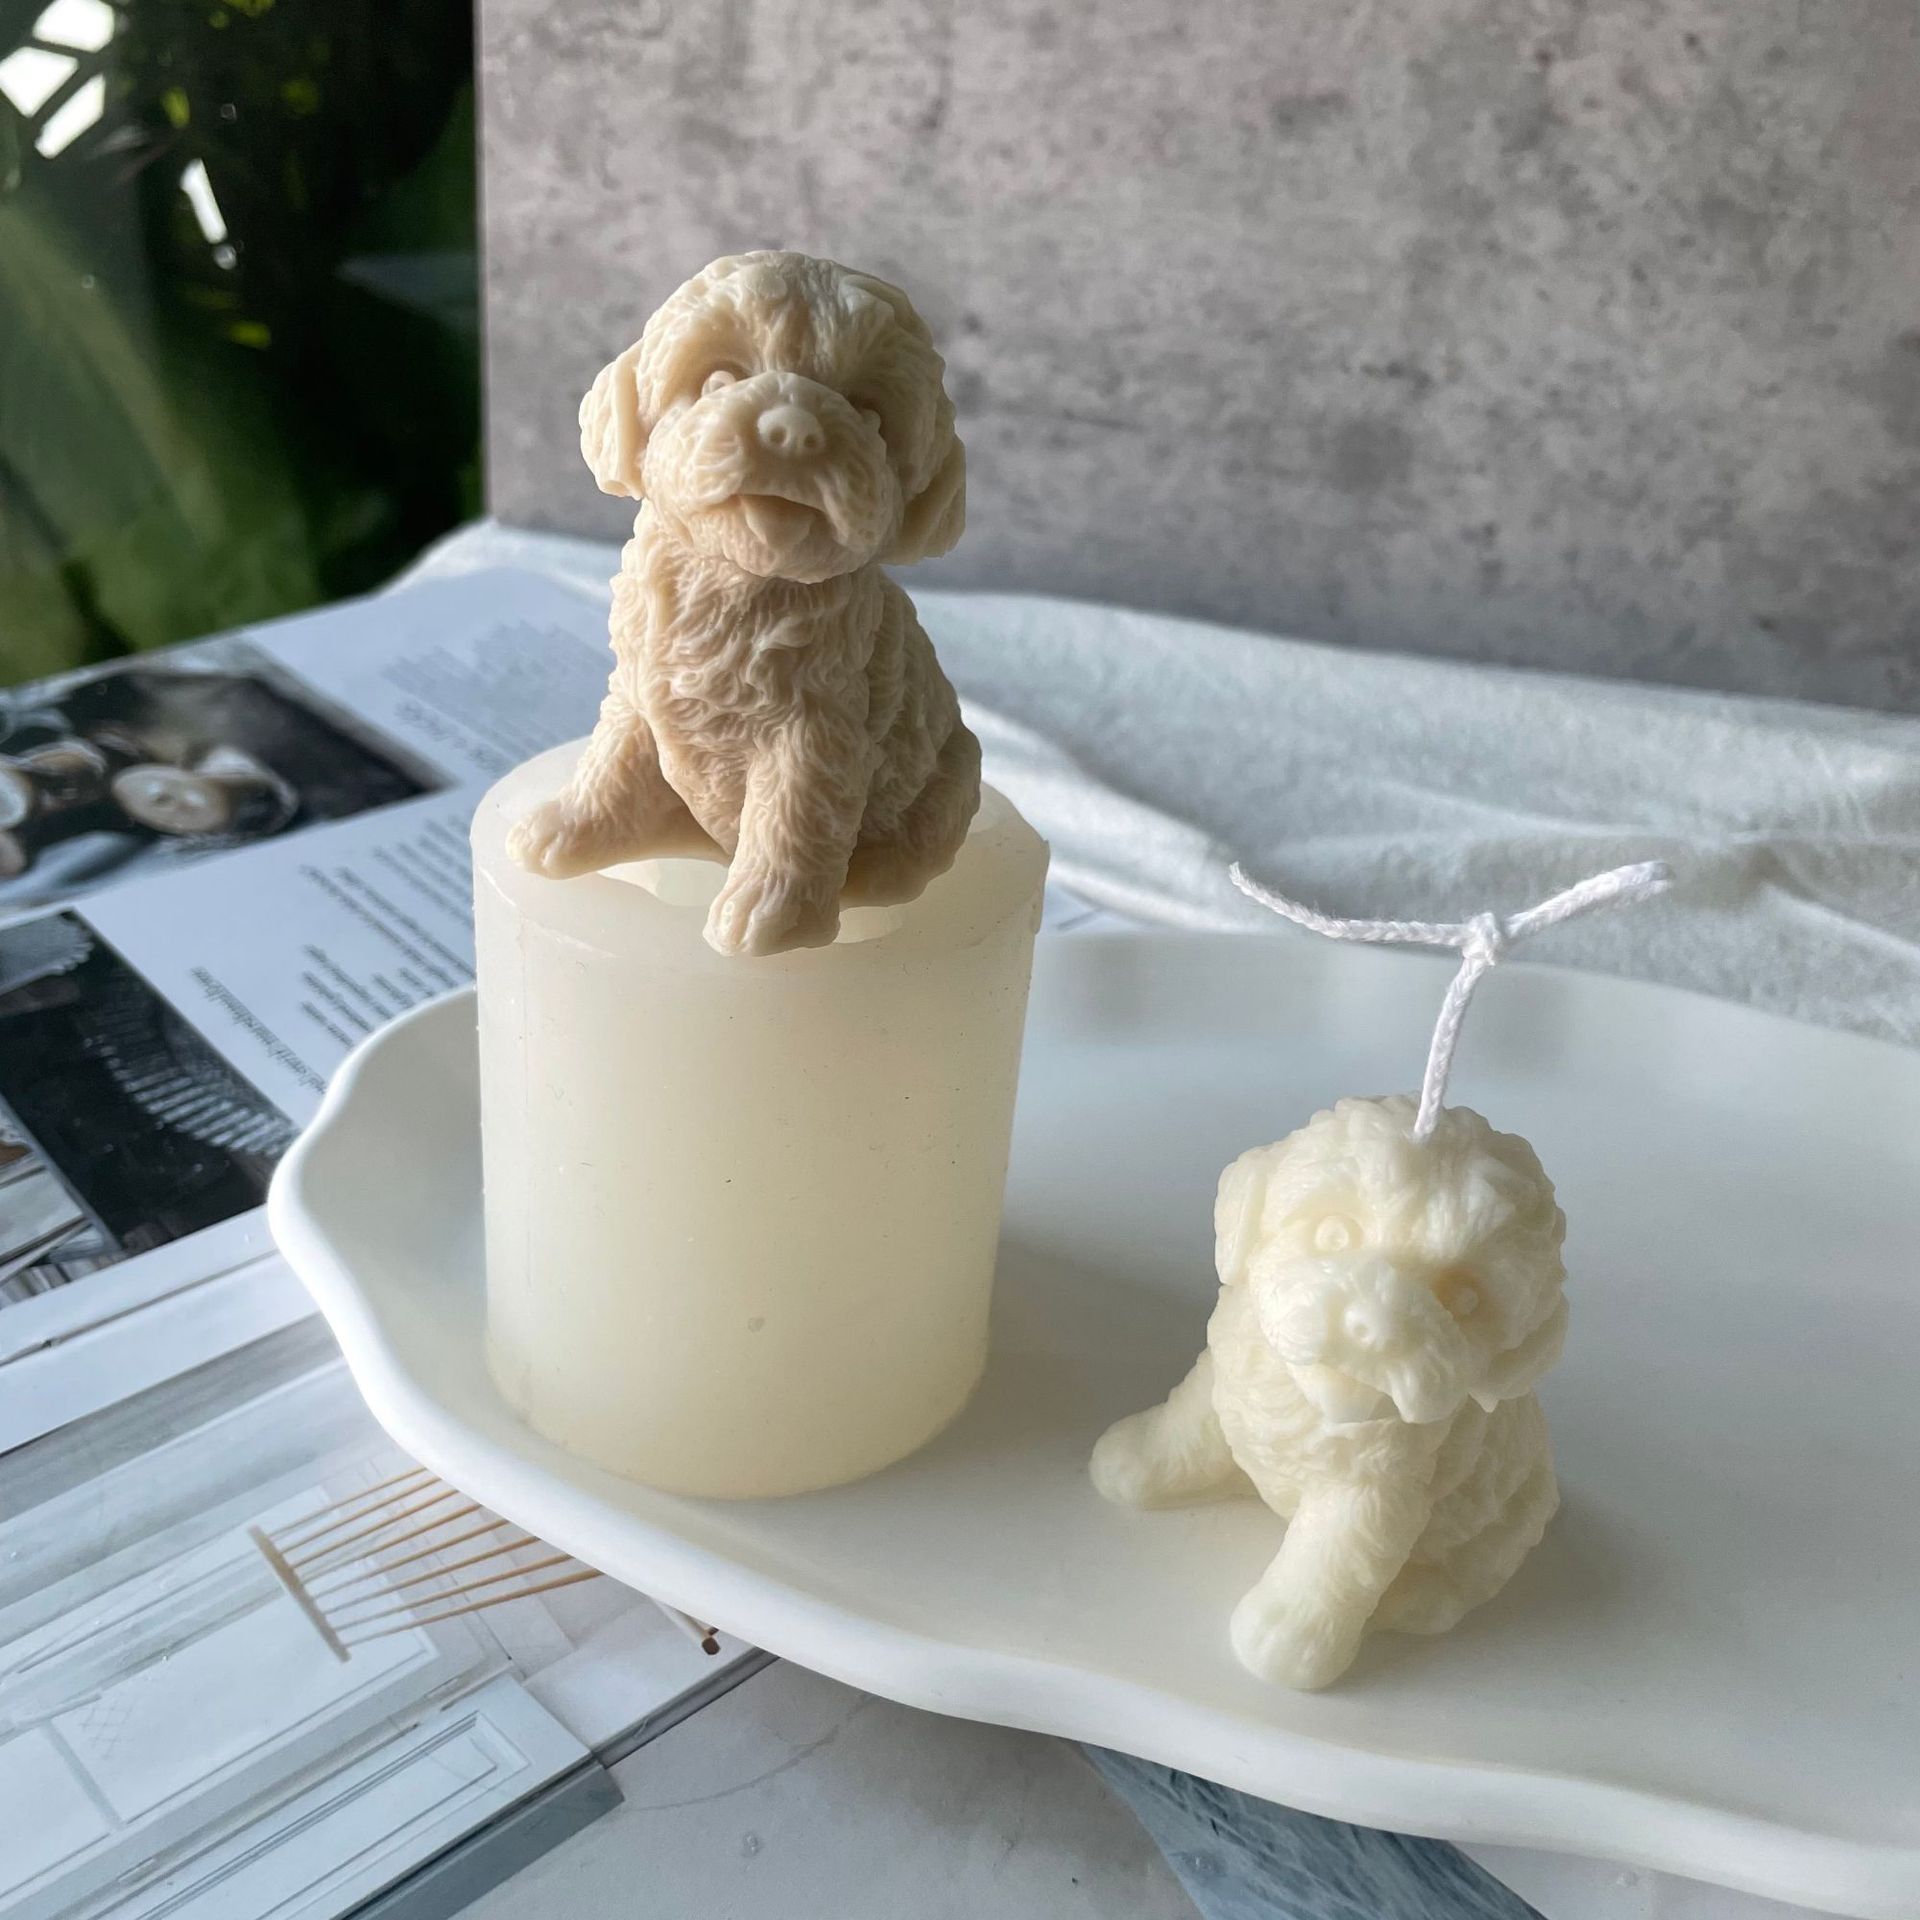 J1149 3D DIY Wax Candle Ho Etsa Sesepa Se Sebōpeho sa Ntja Resin Mold Teddy Puppy Kerese Silicone Mold